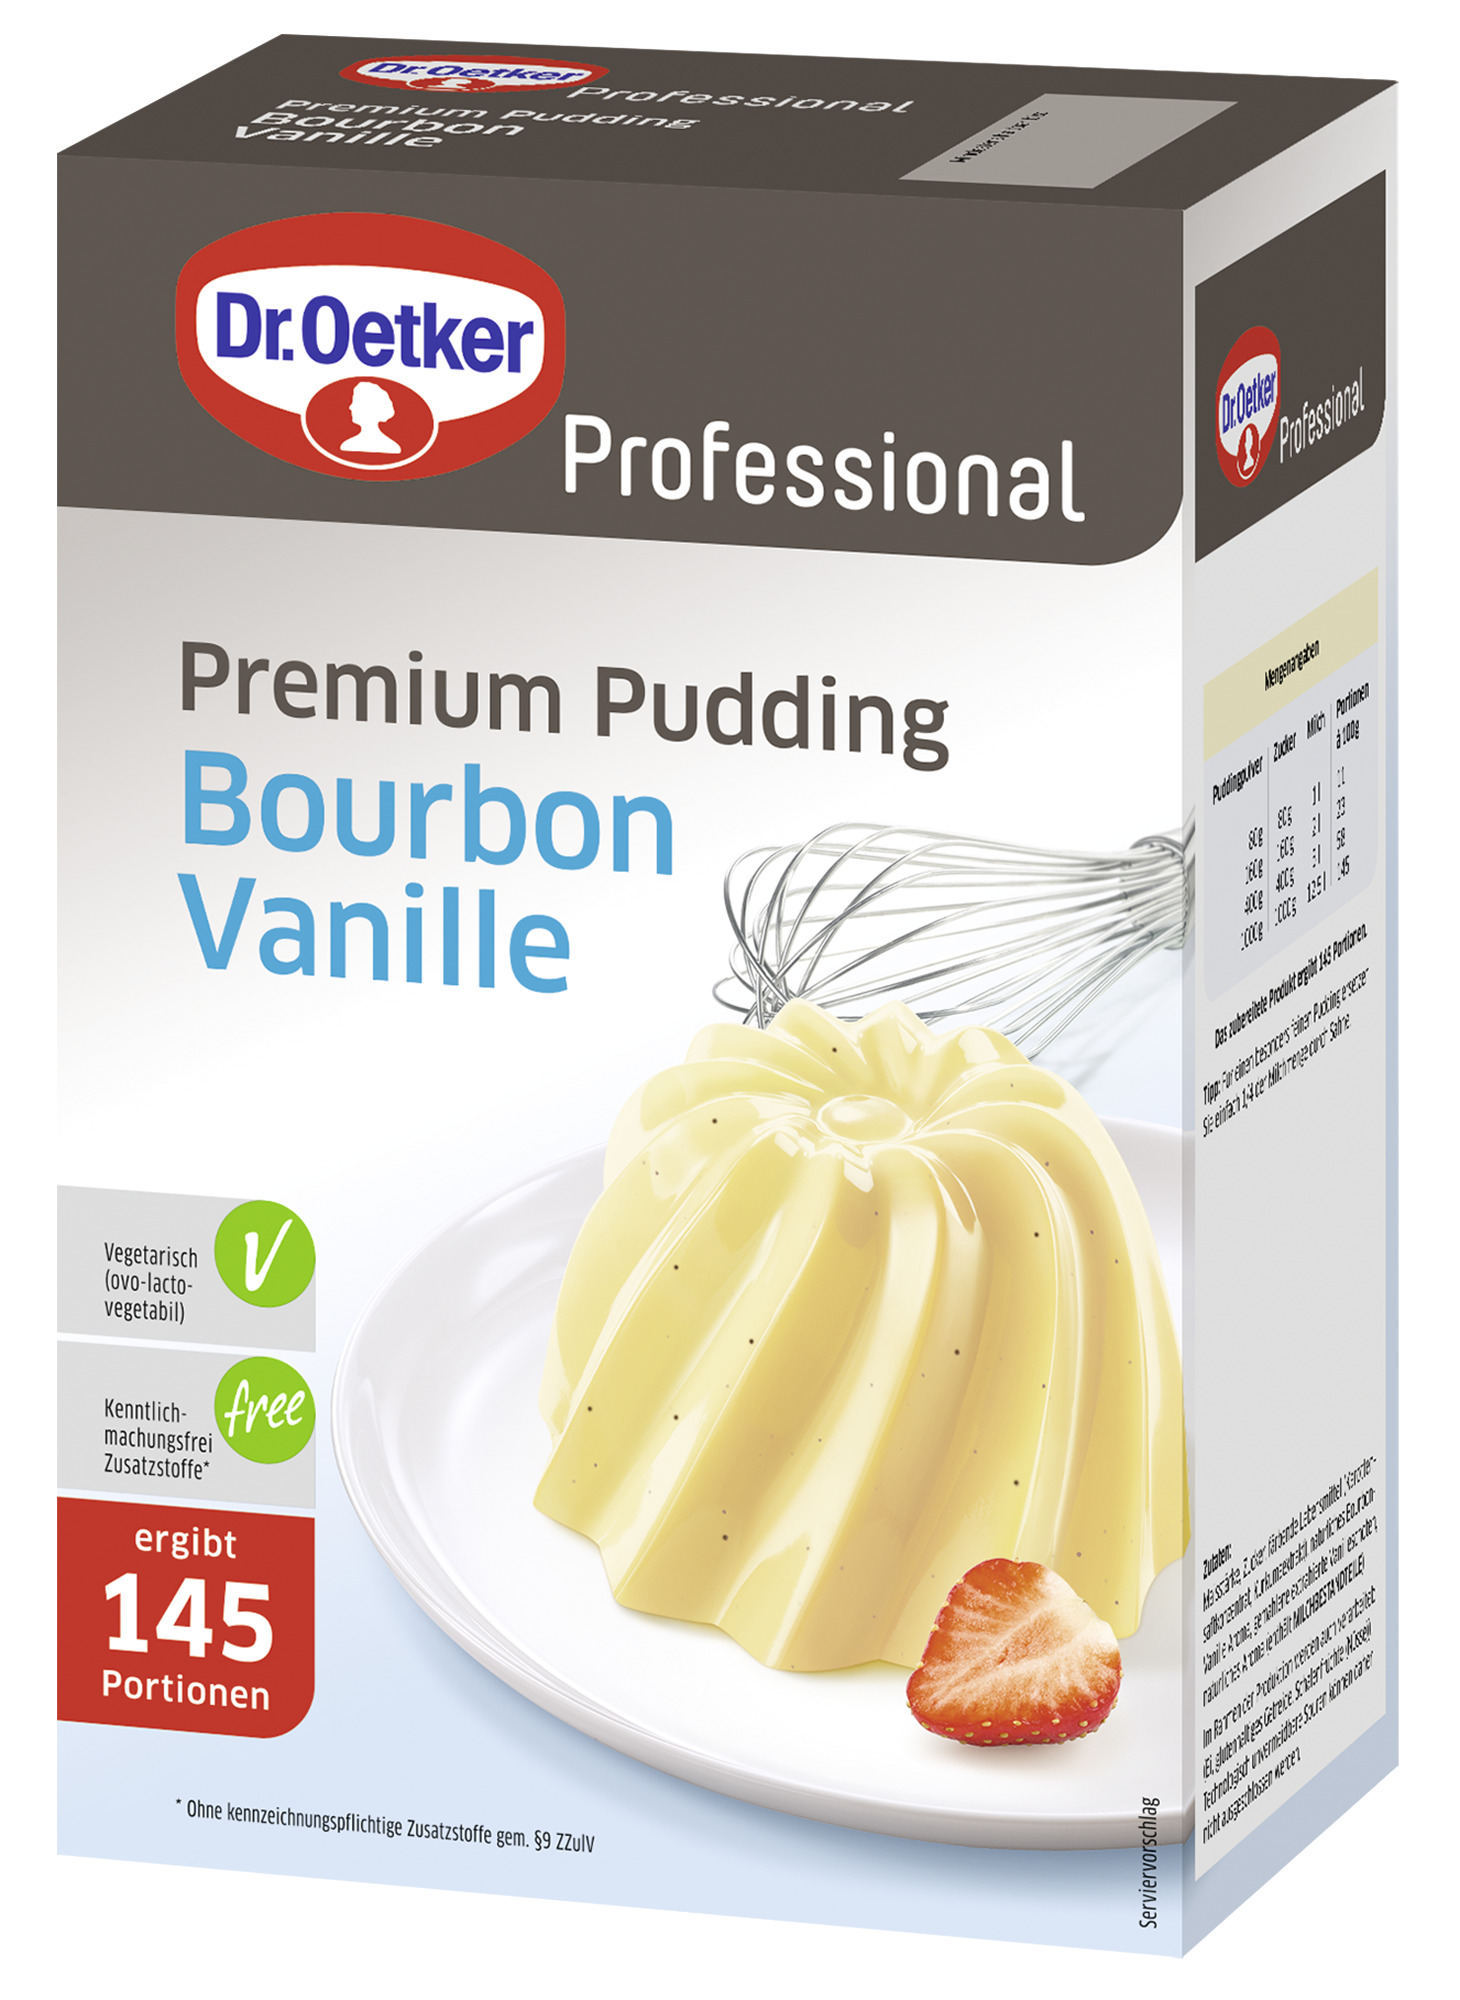 Premium Pudding Bourbon Vanille 1000g